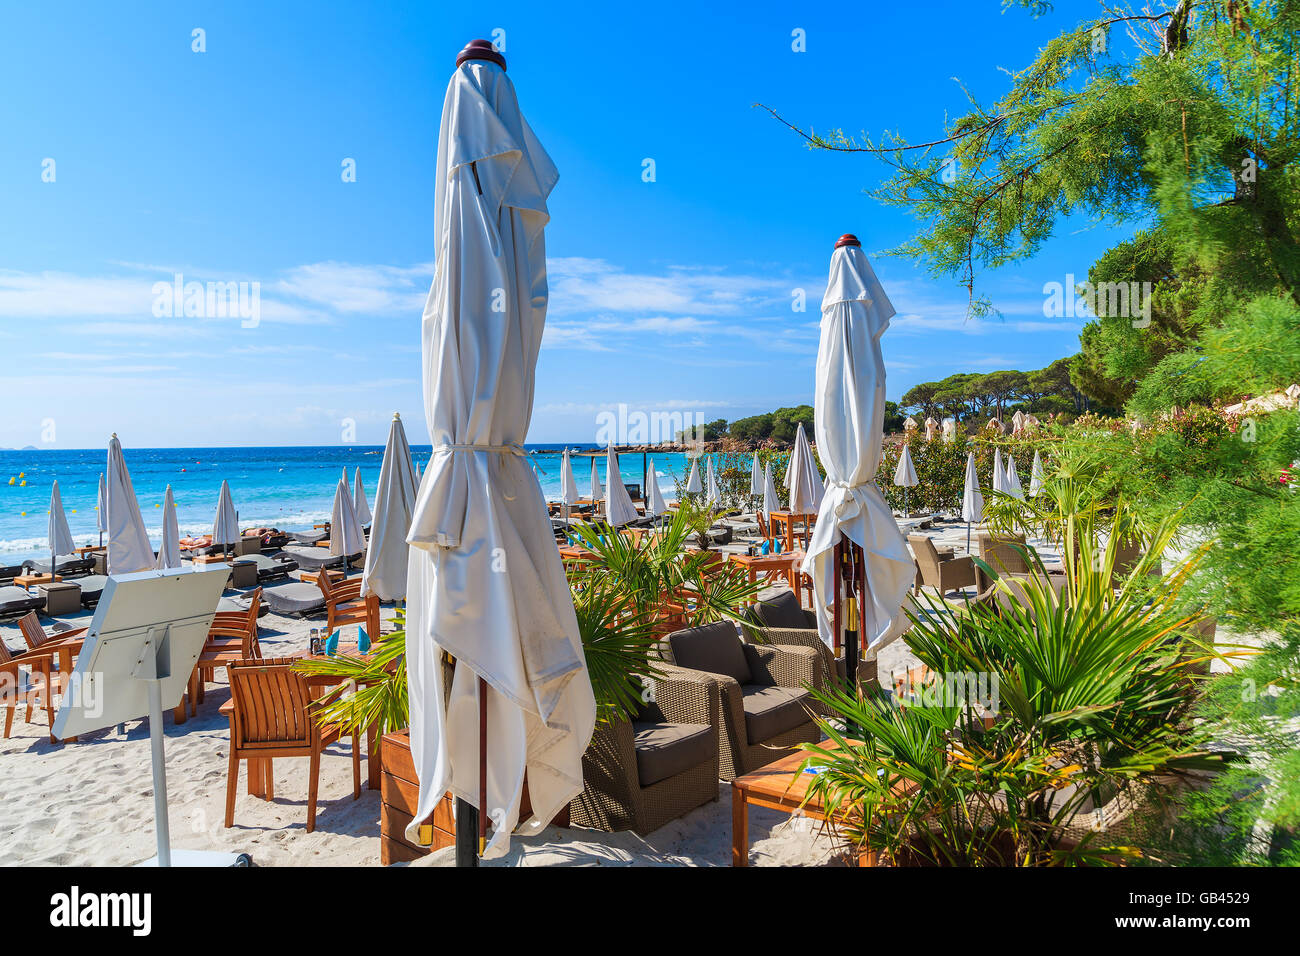 La spiaggia di Palombaggia, CORSICA - giu 24, 2015: Ombrelloni con lettini e cafe bar tabelle sulla spiaggia di Palombaggia, Corsica islan Foto Stock